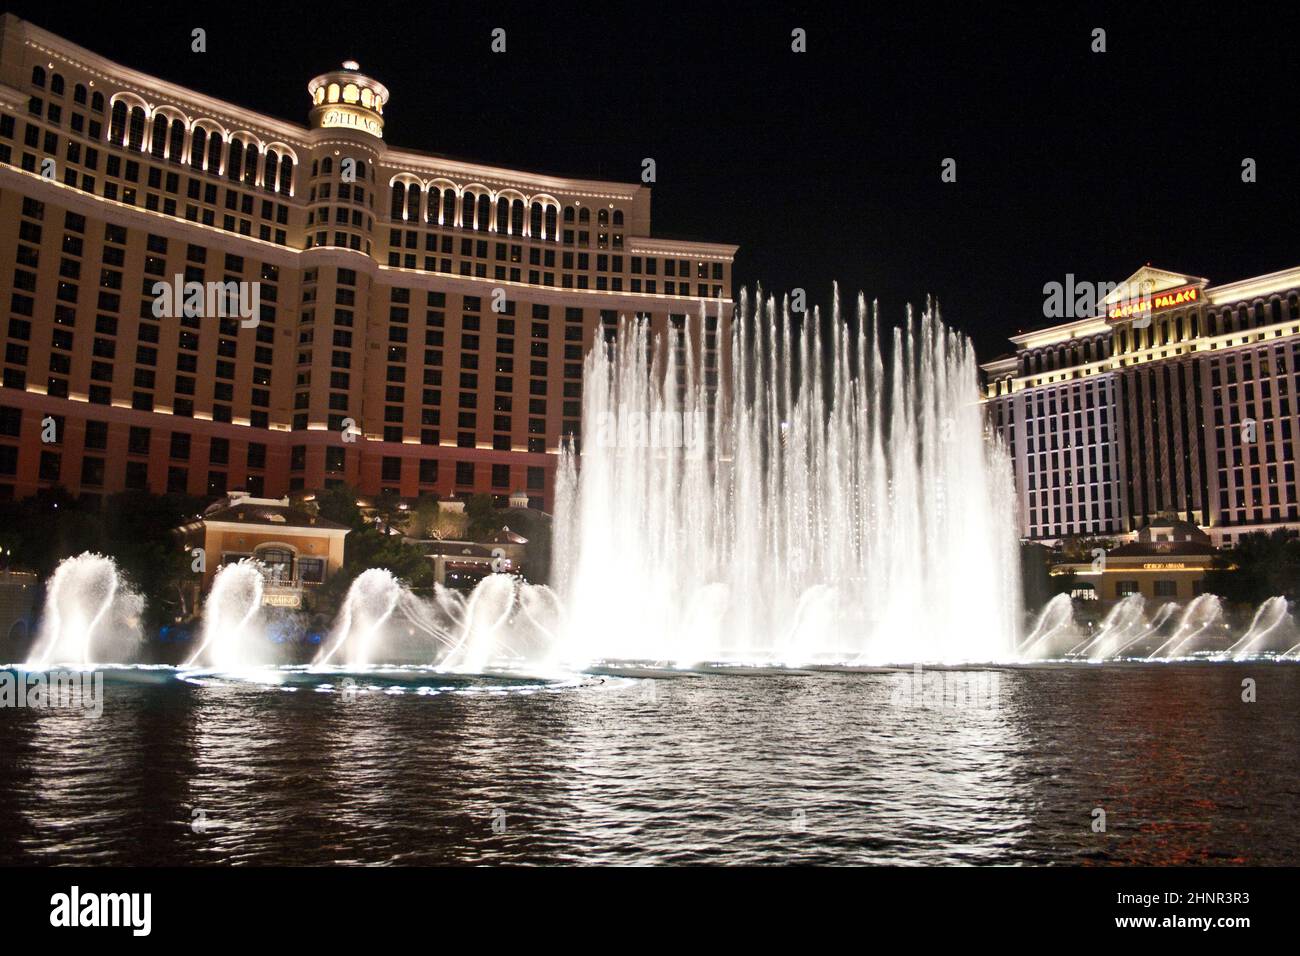 Casino de l'hôtel Bellagio, avec son spectacle de fontaine de renommée mondiale Banque D'Images